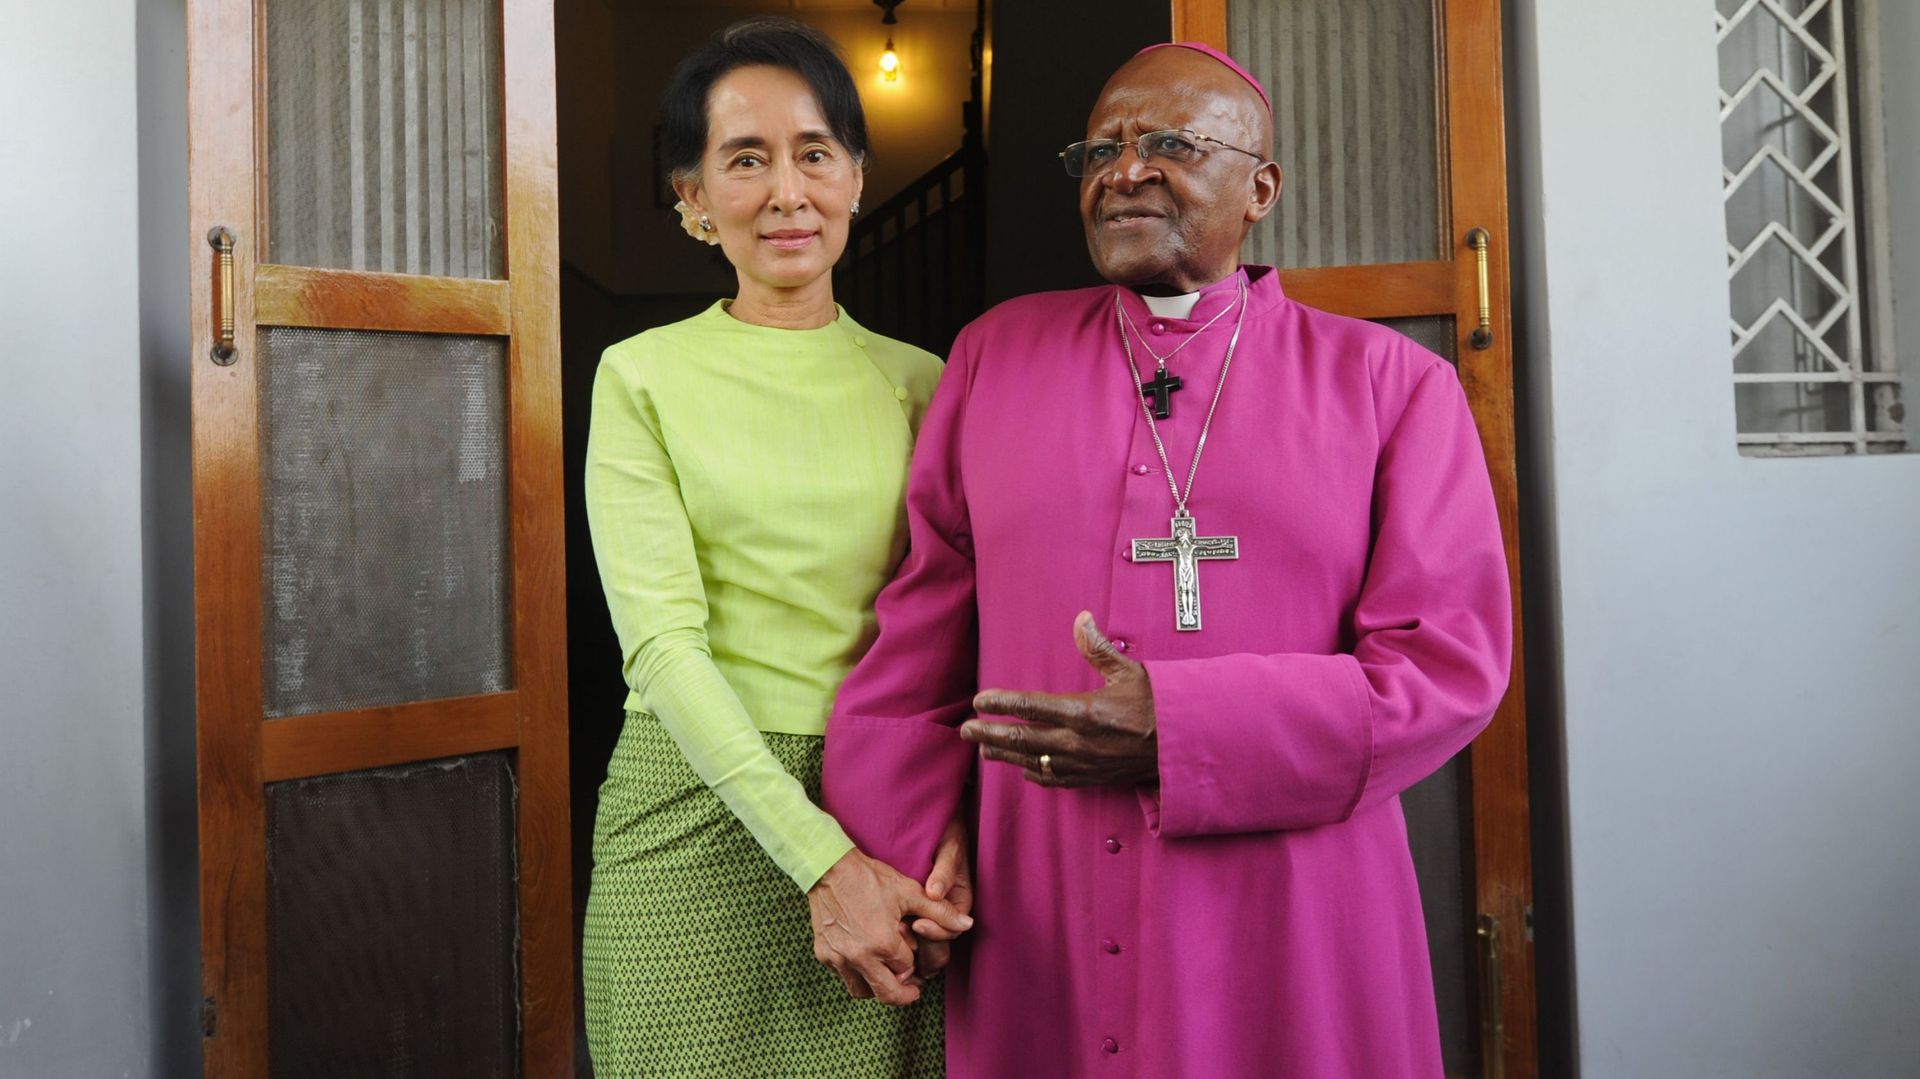 Desmond Tutu exhorte Aung San Suu Kyi à intervenir pour protéger les Rohingyas